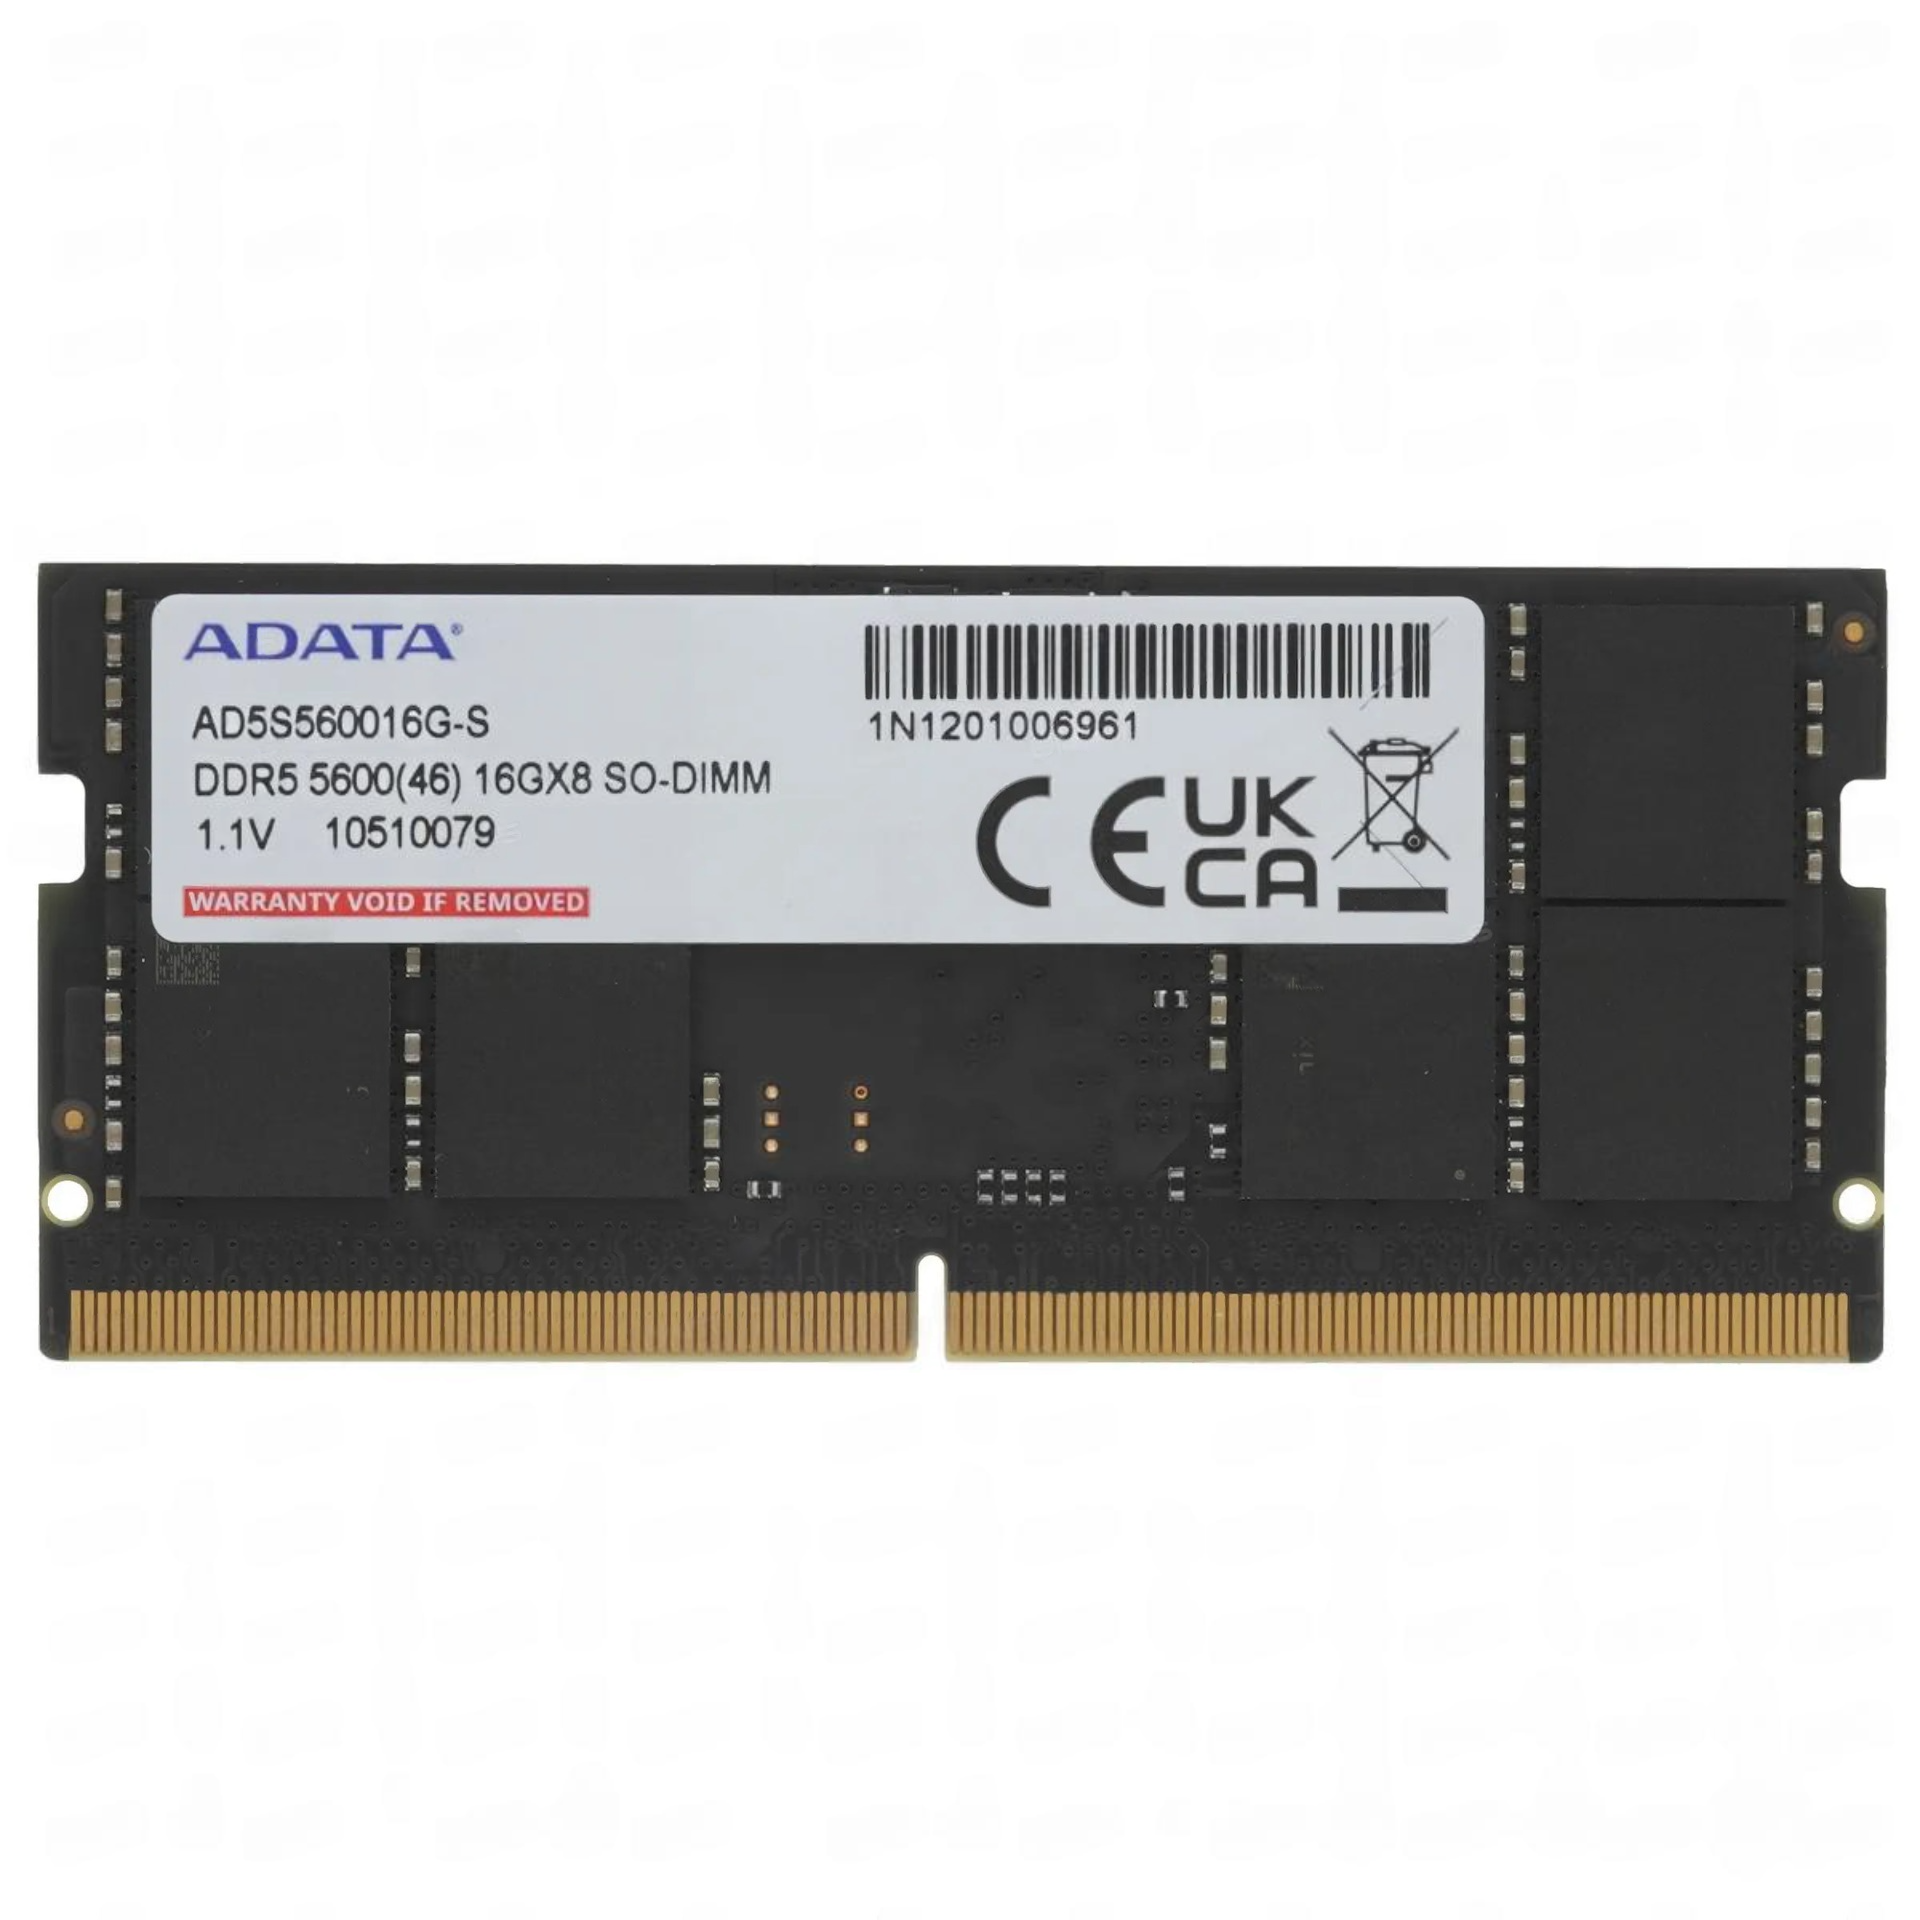 Оперативная память Adata Premier, 16 Гб DDR5 (1x16 Гб), 5600 МГц, AD5S560016G-S, черный карта расширения riser 1x16 1x16 gpu 2288hv5 huawei